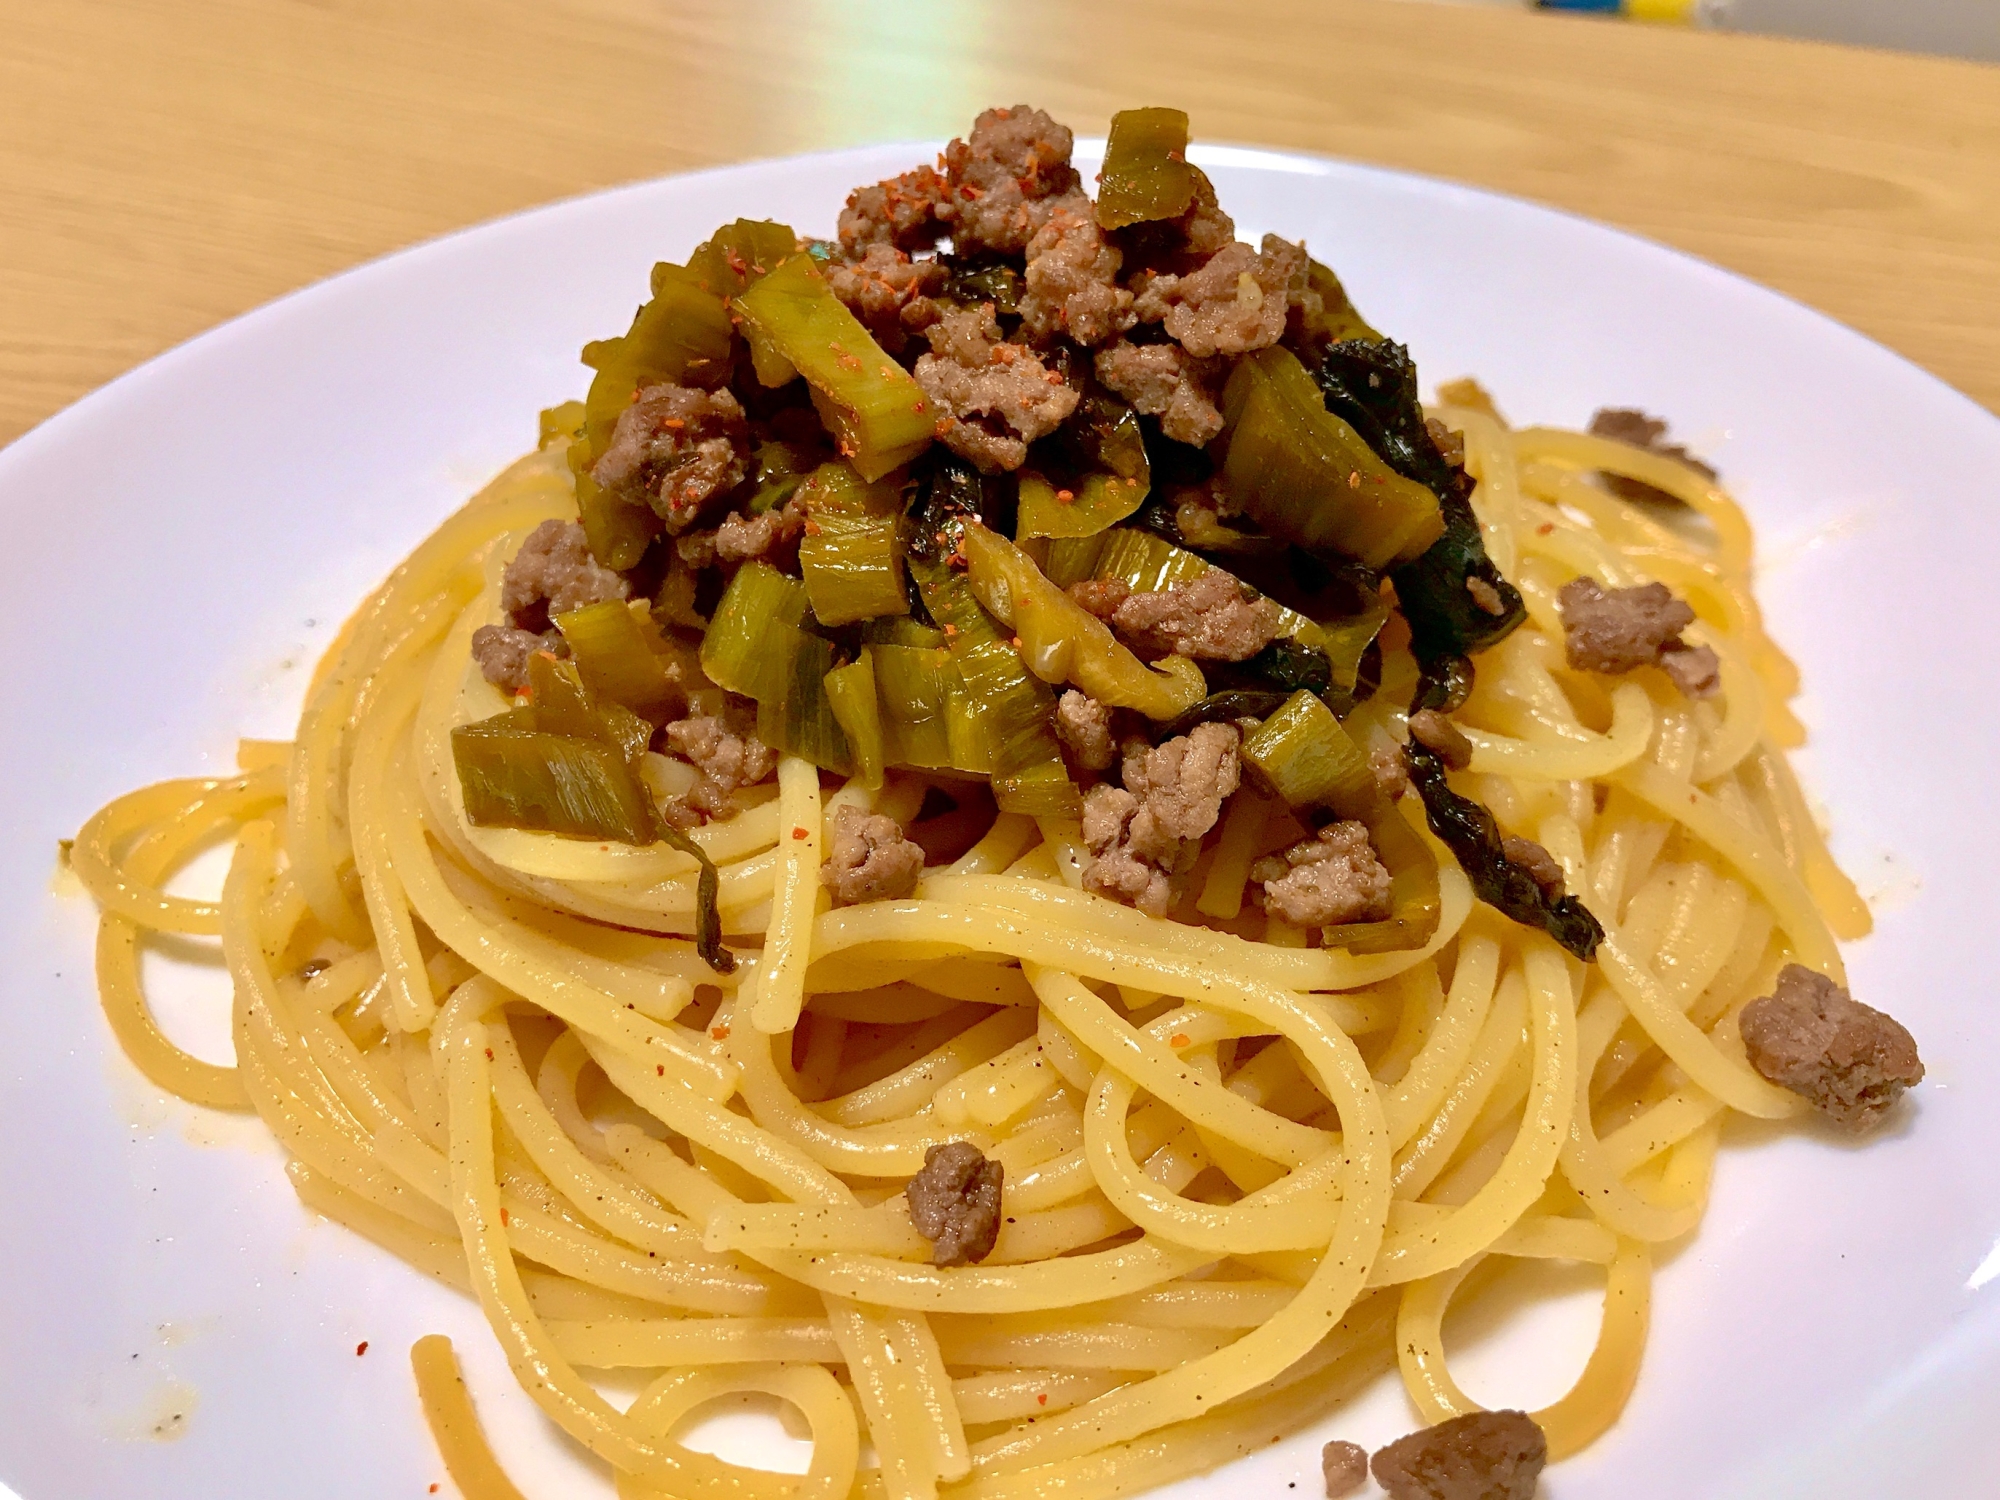 高菜とひき肉のスパゲッティ